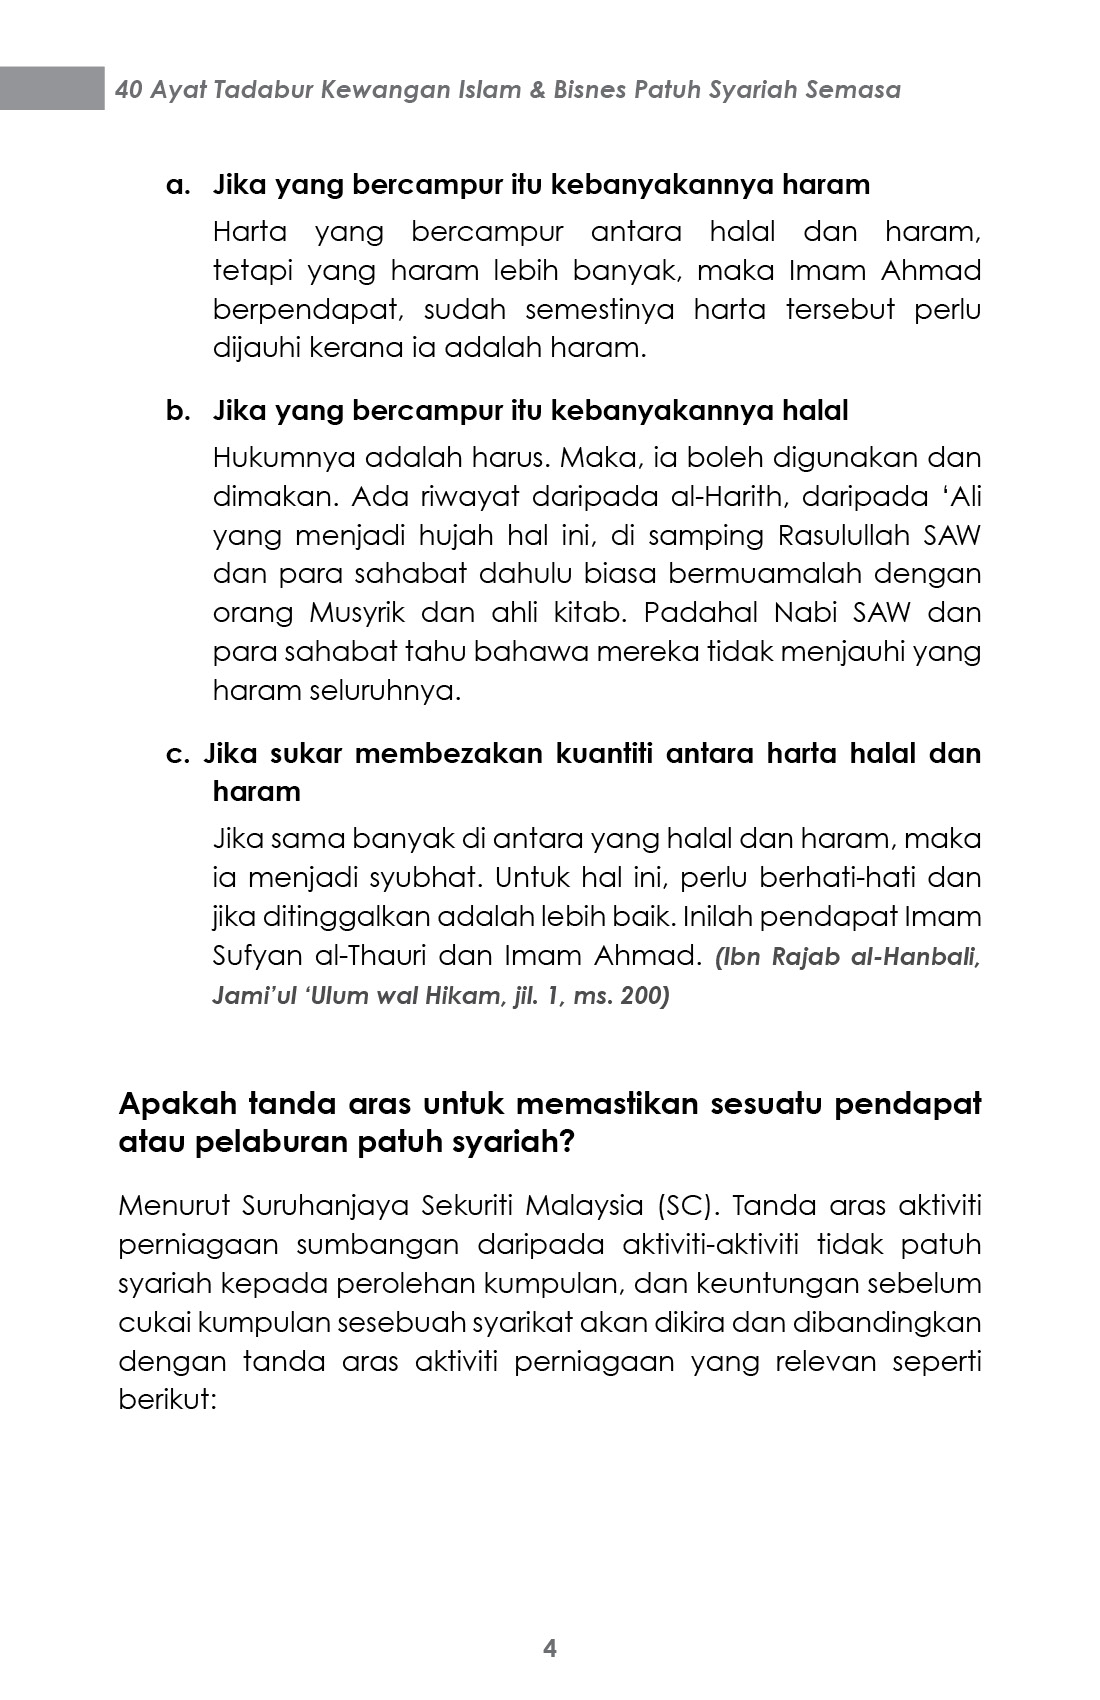 40 Ayat Tadabbur Kewangan Islam - Mustafar Mohd Suki [PRE-ORDER]